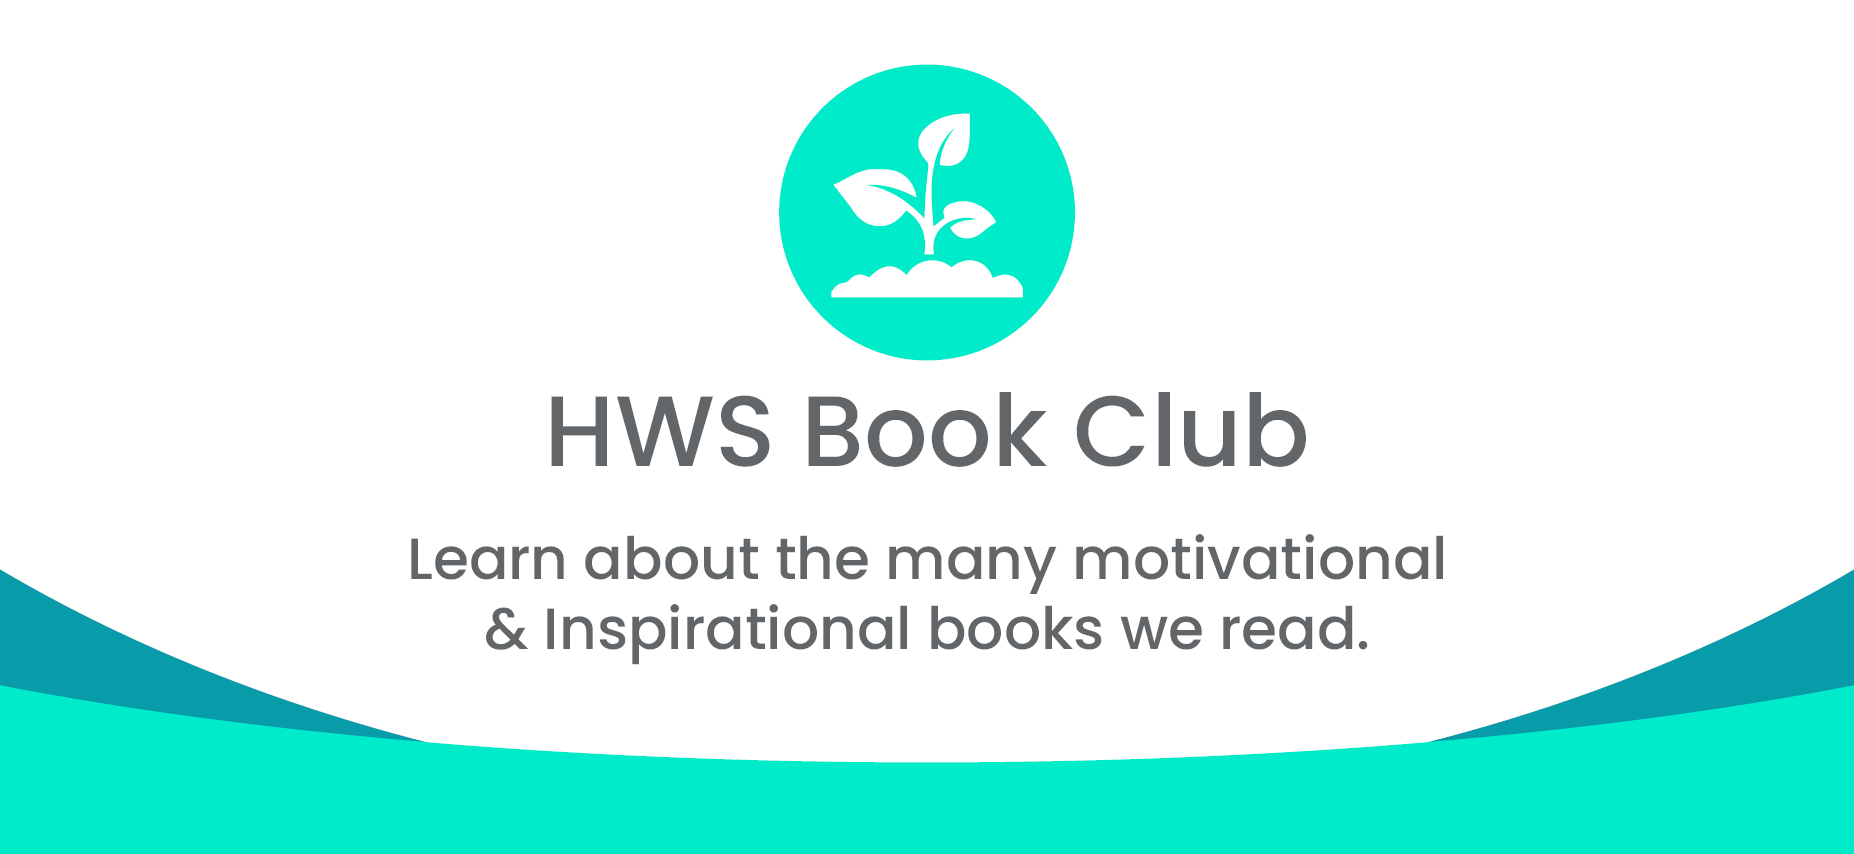 HWS Book Club